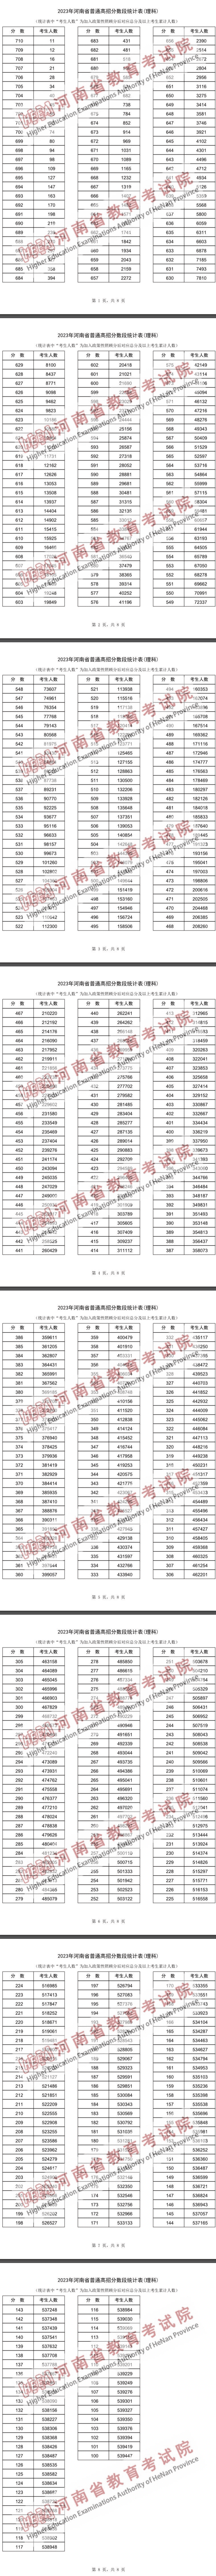 2023河南高考文理科一分一段明细表 成绩分段表